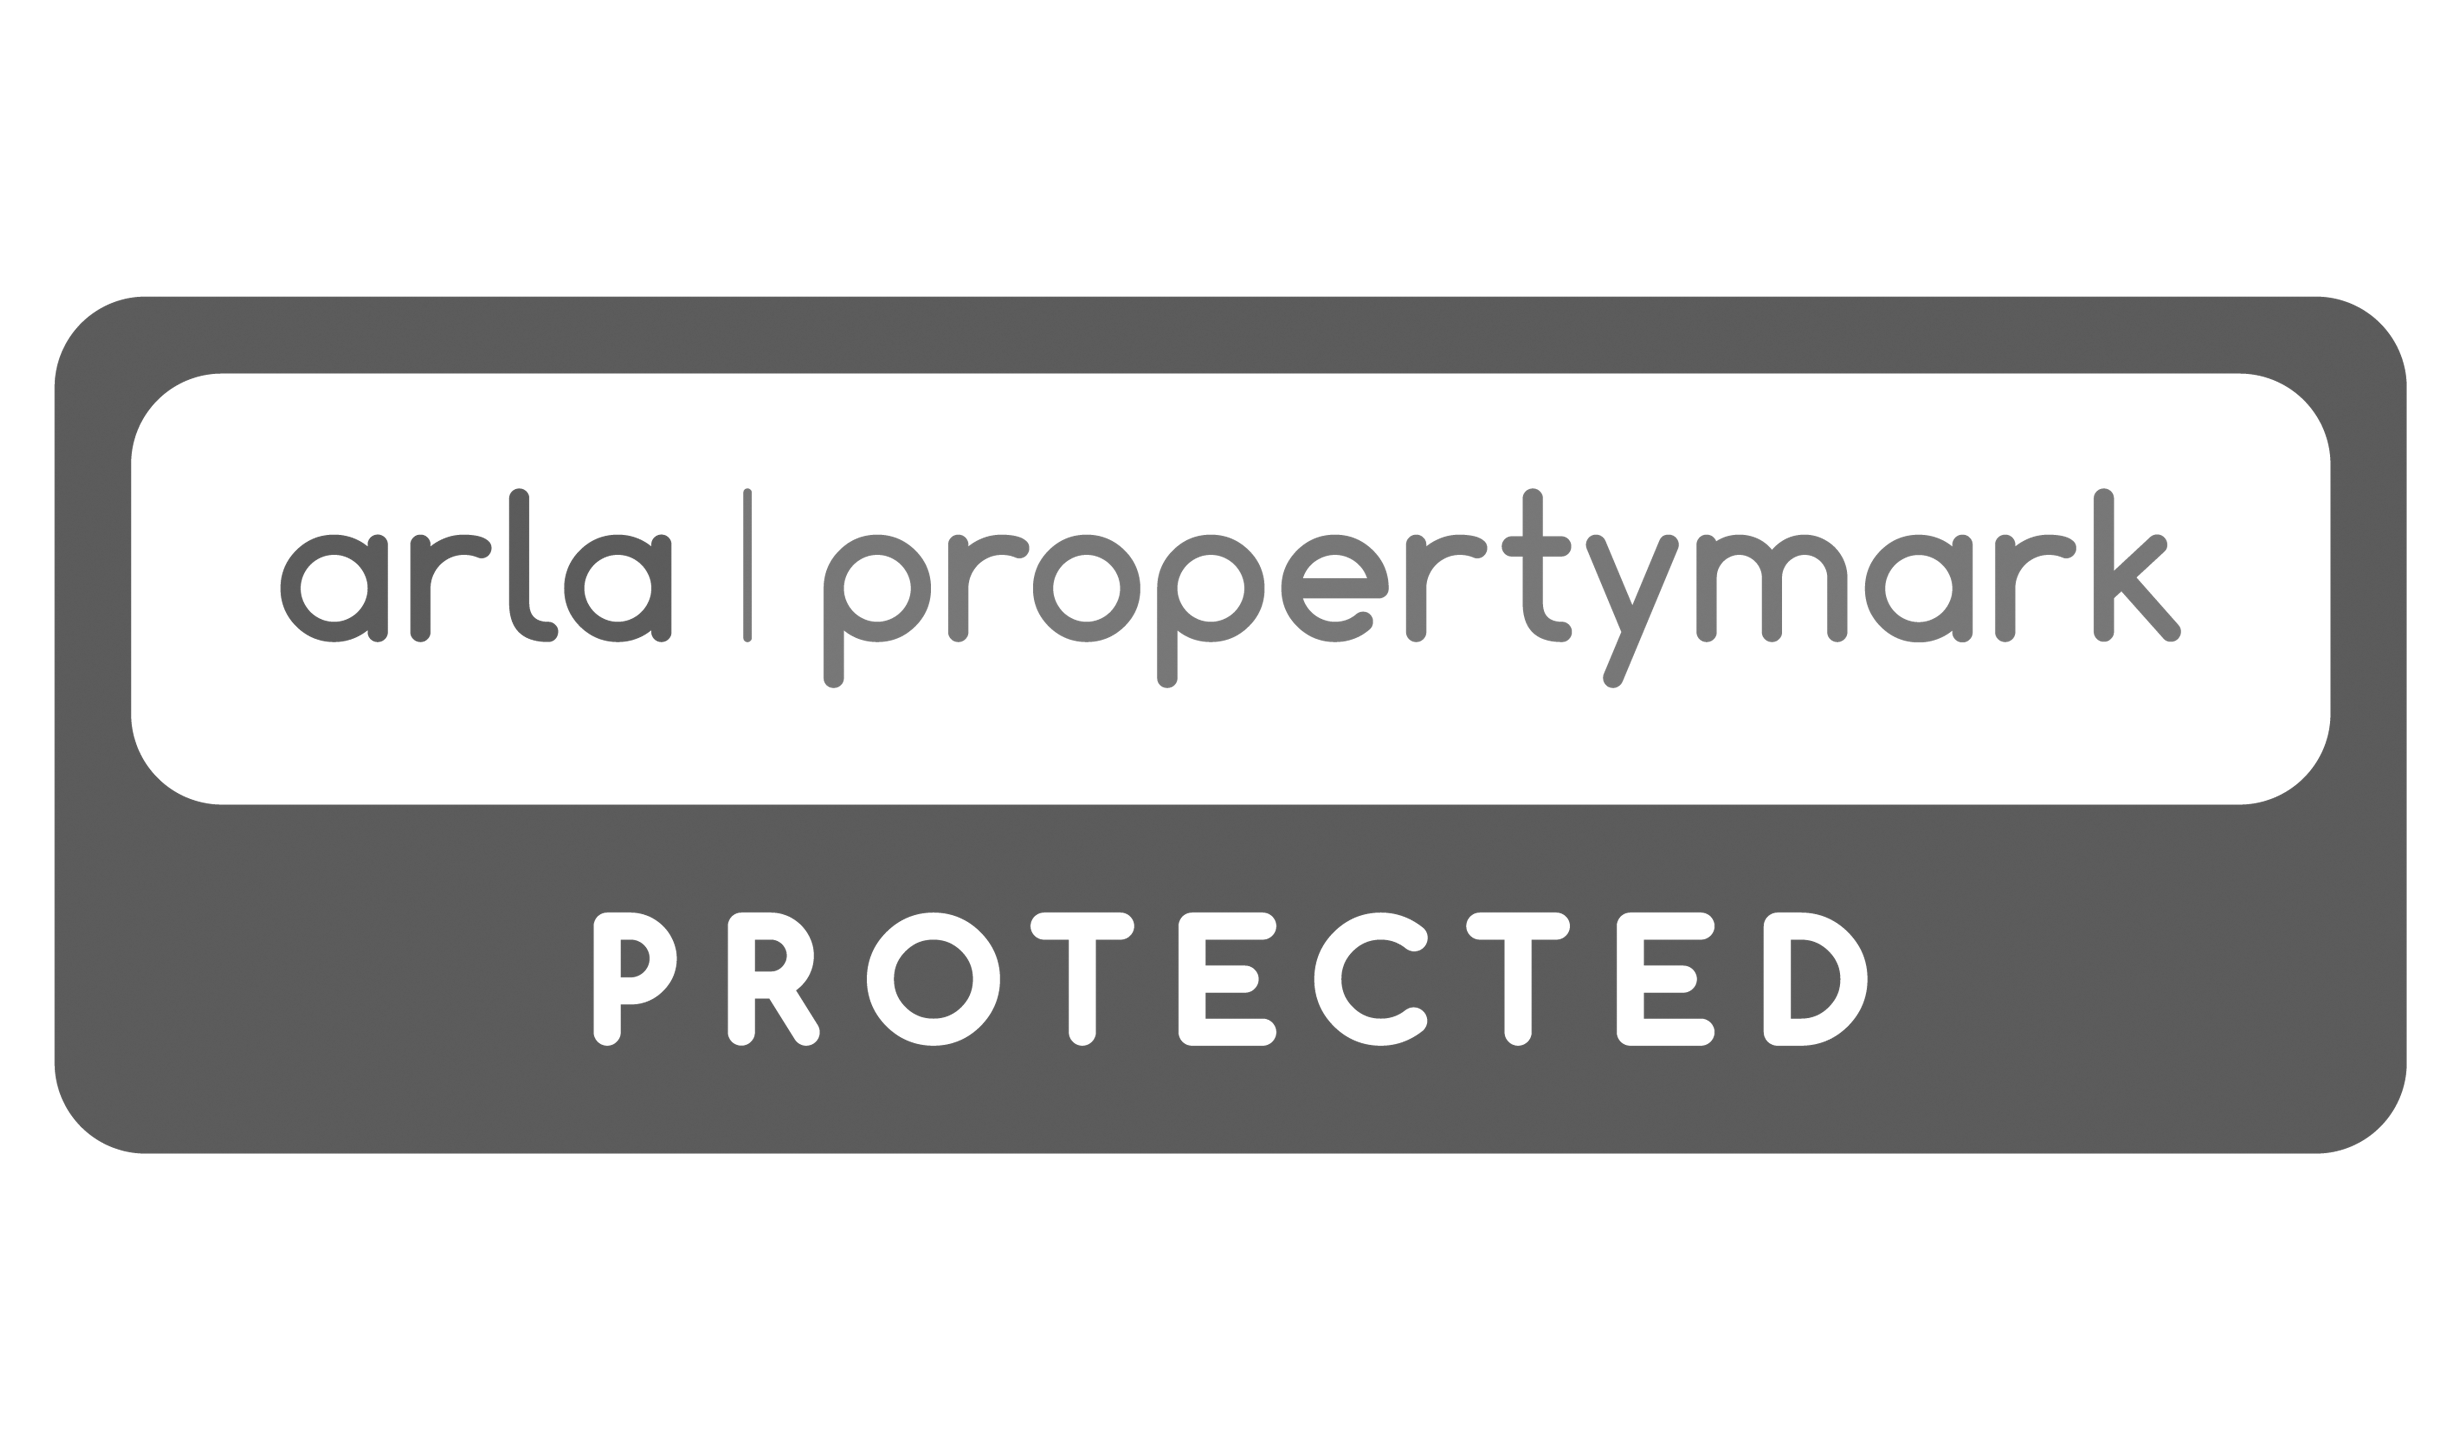 ARLA-Propertymark-Protected-Greyscale